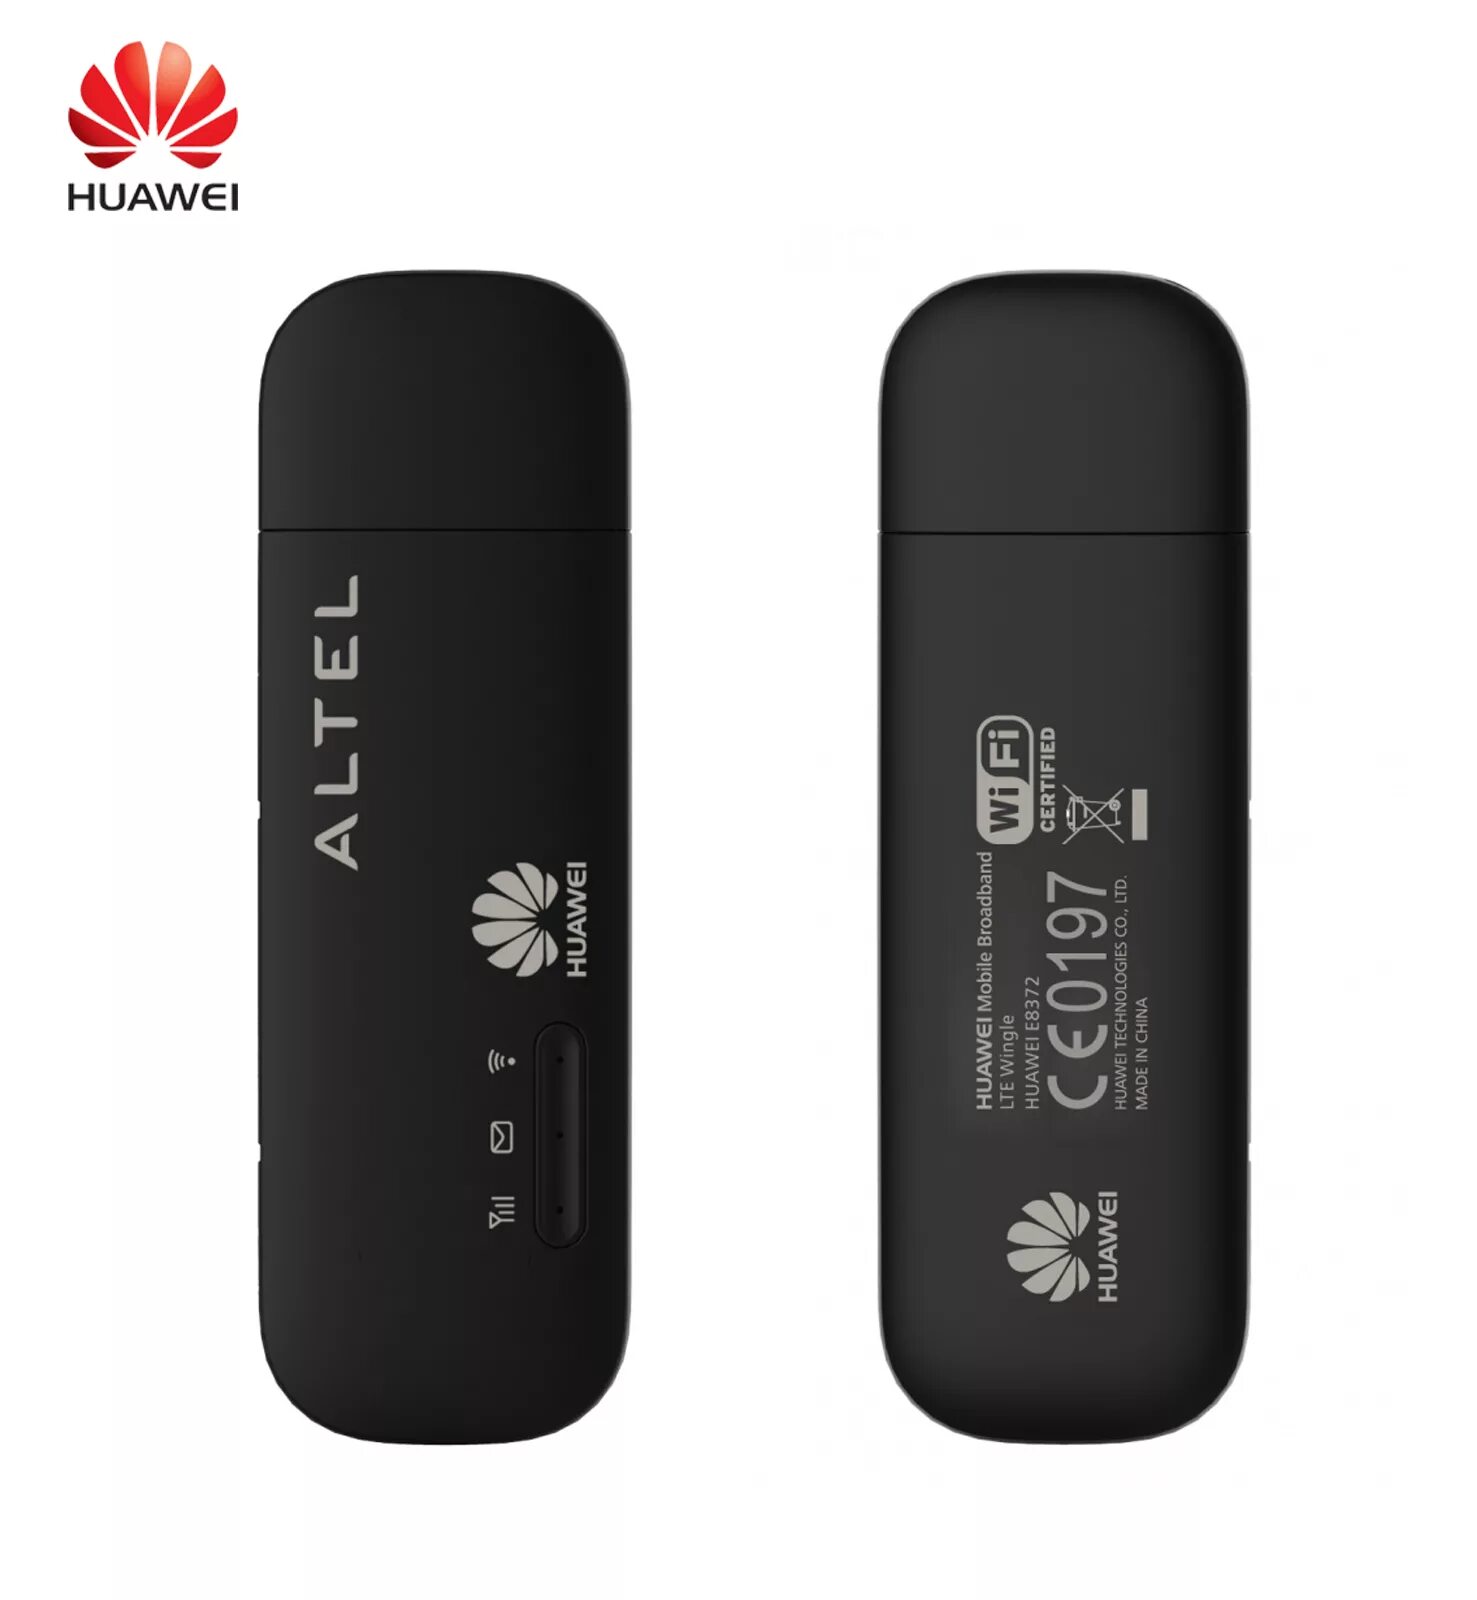 Huawei 8372. Хуавей e8372. Huawei e8372h-153. Huawei USB e8372. Huawei e8372 LTE.